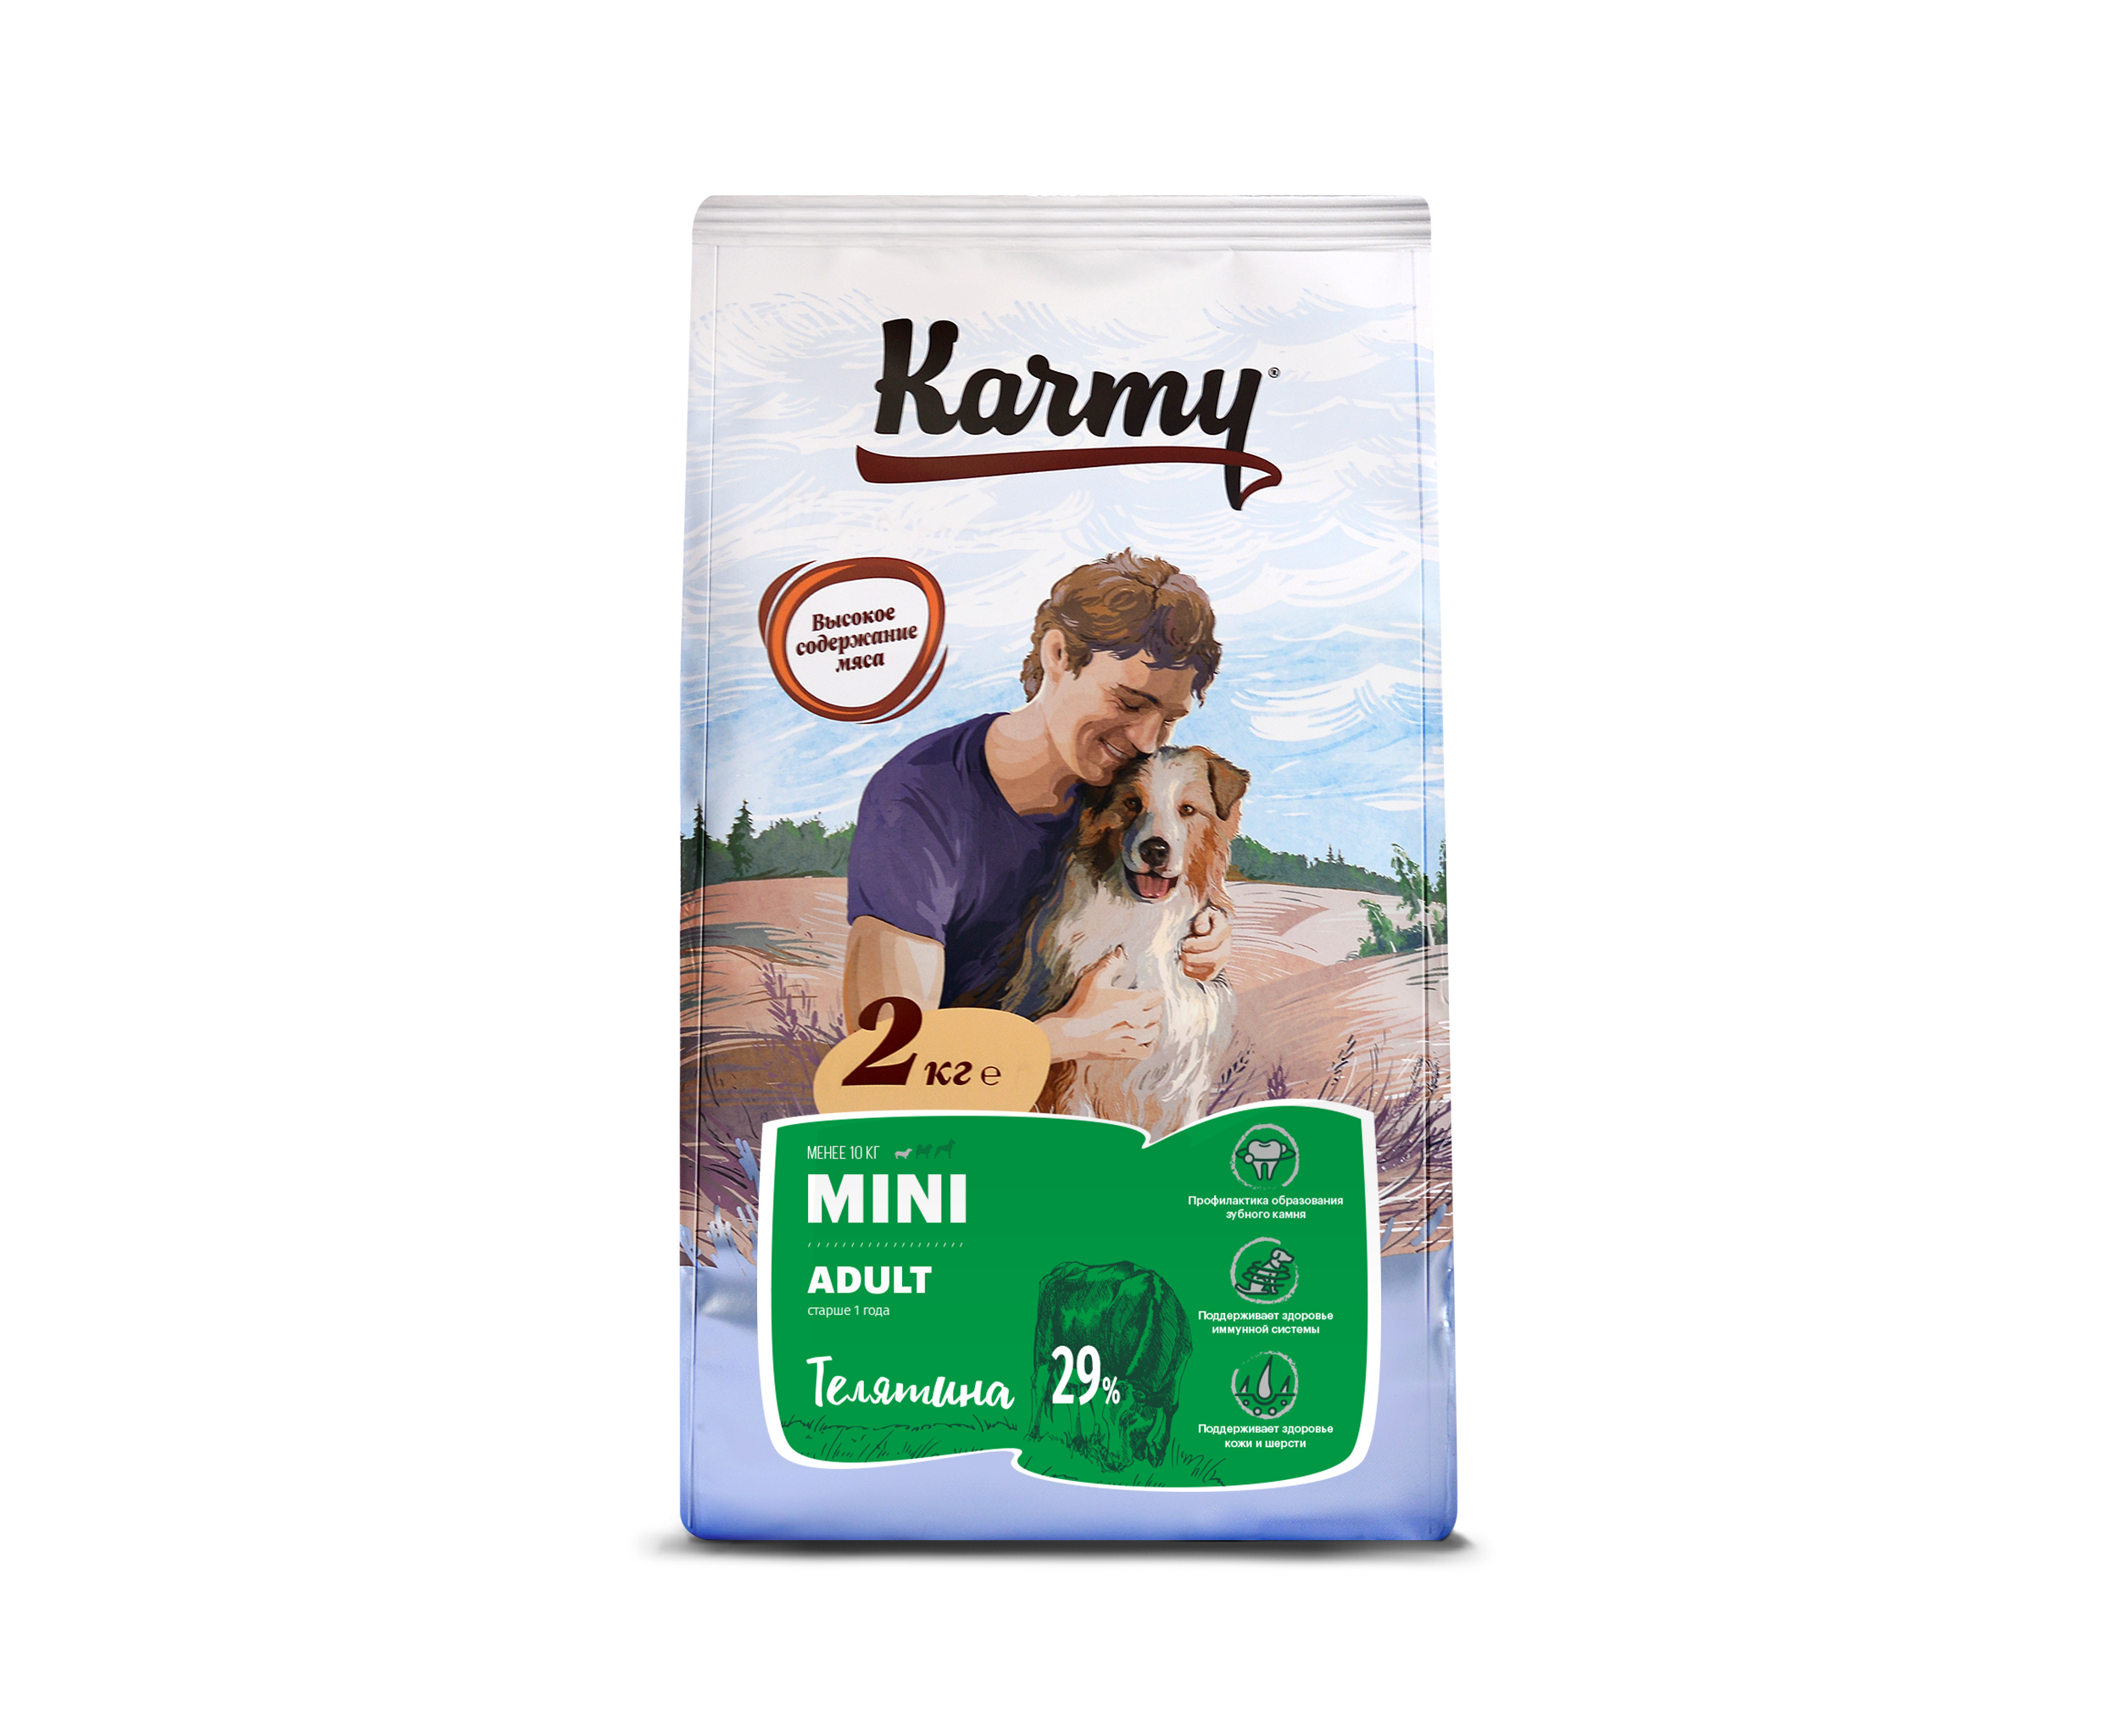 Корм для собак karmy 15 кг. Karmy сухой корм для щенков 15 кг. Корм Карми Медиум адульт. Корм для собак karmy (15 кг) Medium Adult индейка.